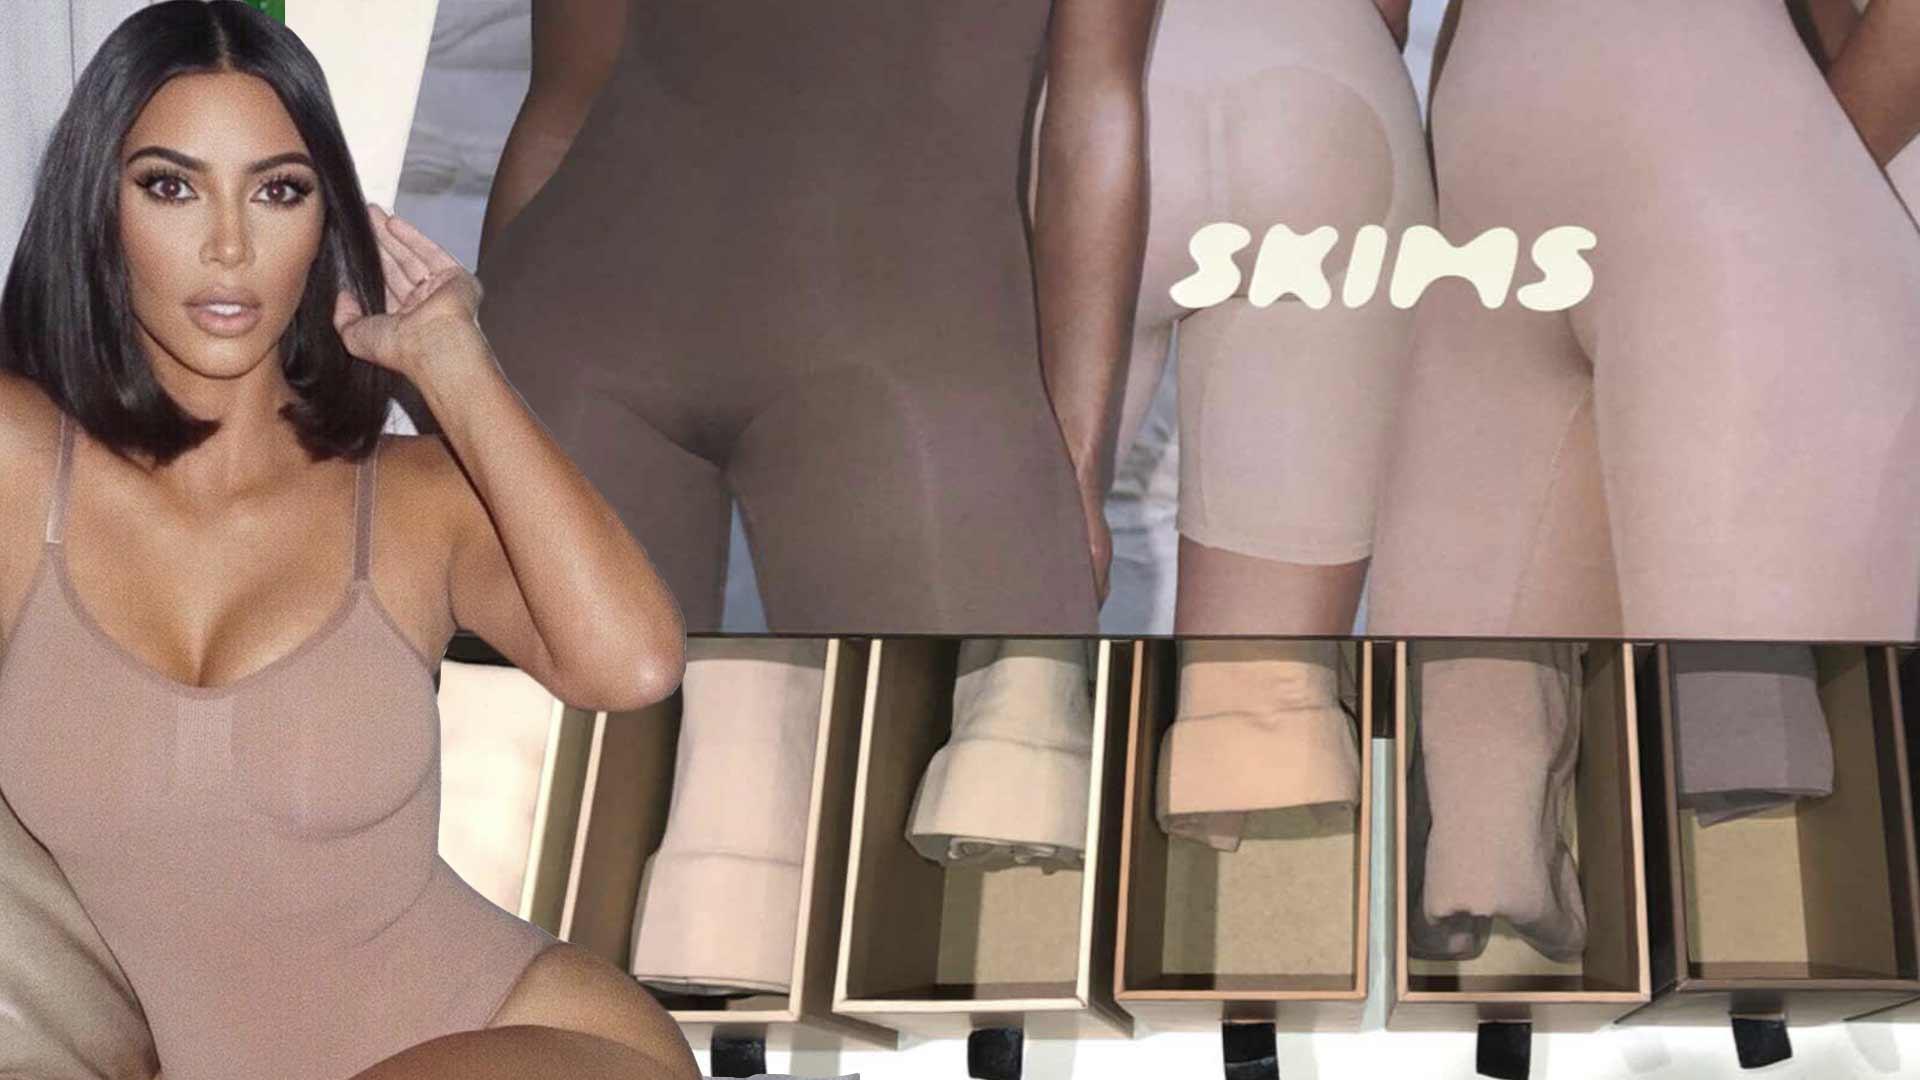 A Look Inside Kim Kardashian's SKIMS Shapewear Press Box - The Blast